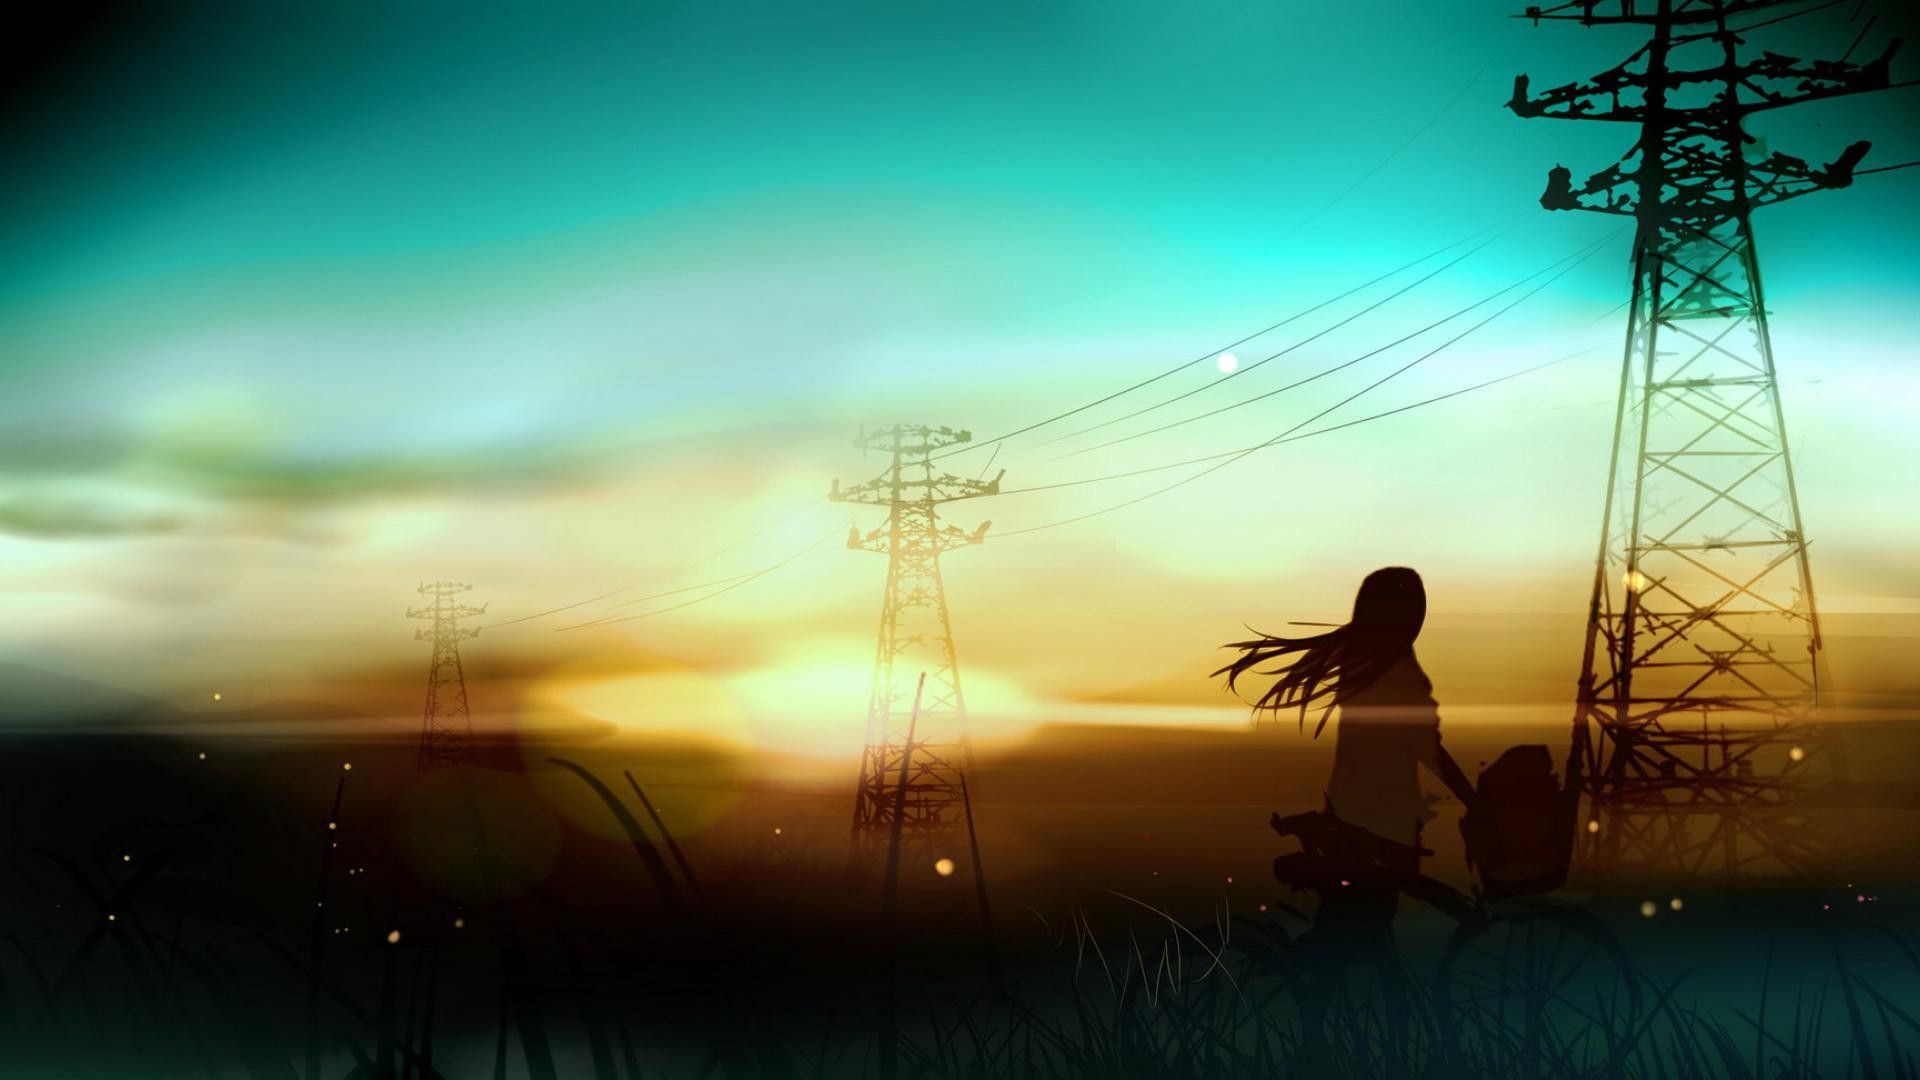 #sky, #anime, #anime girls, #nature, #sunlight, #power